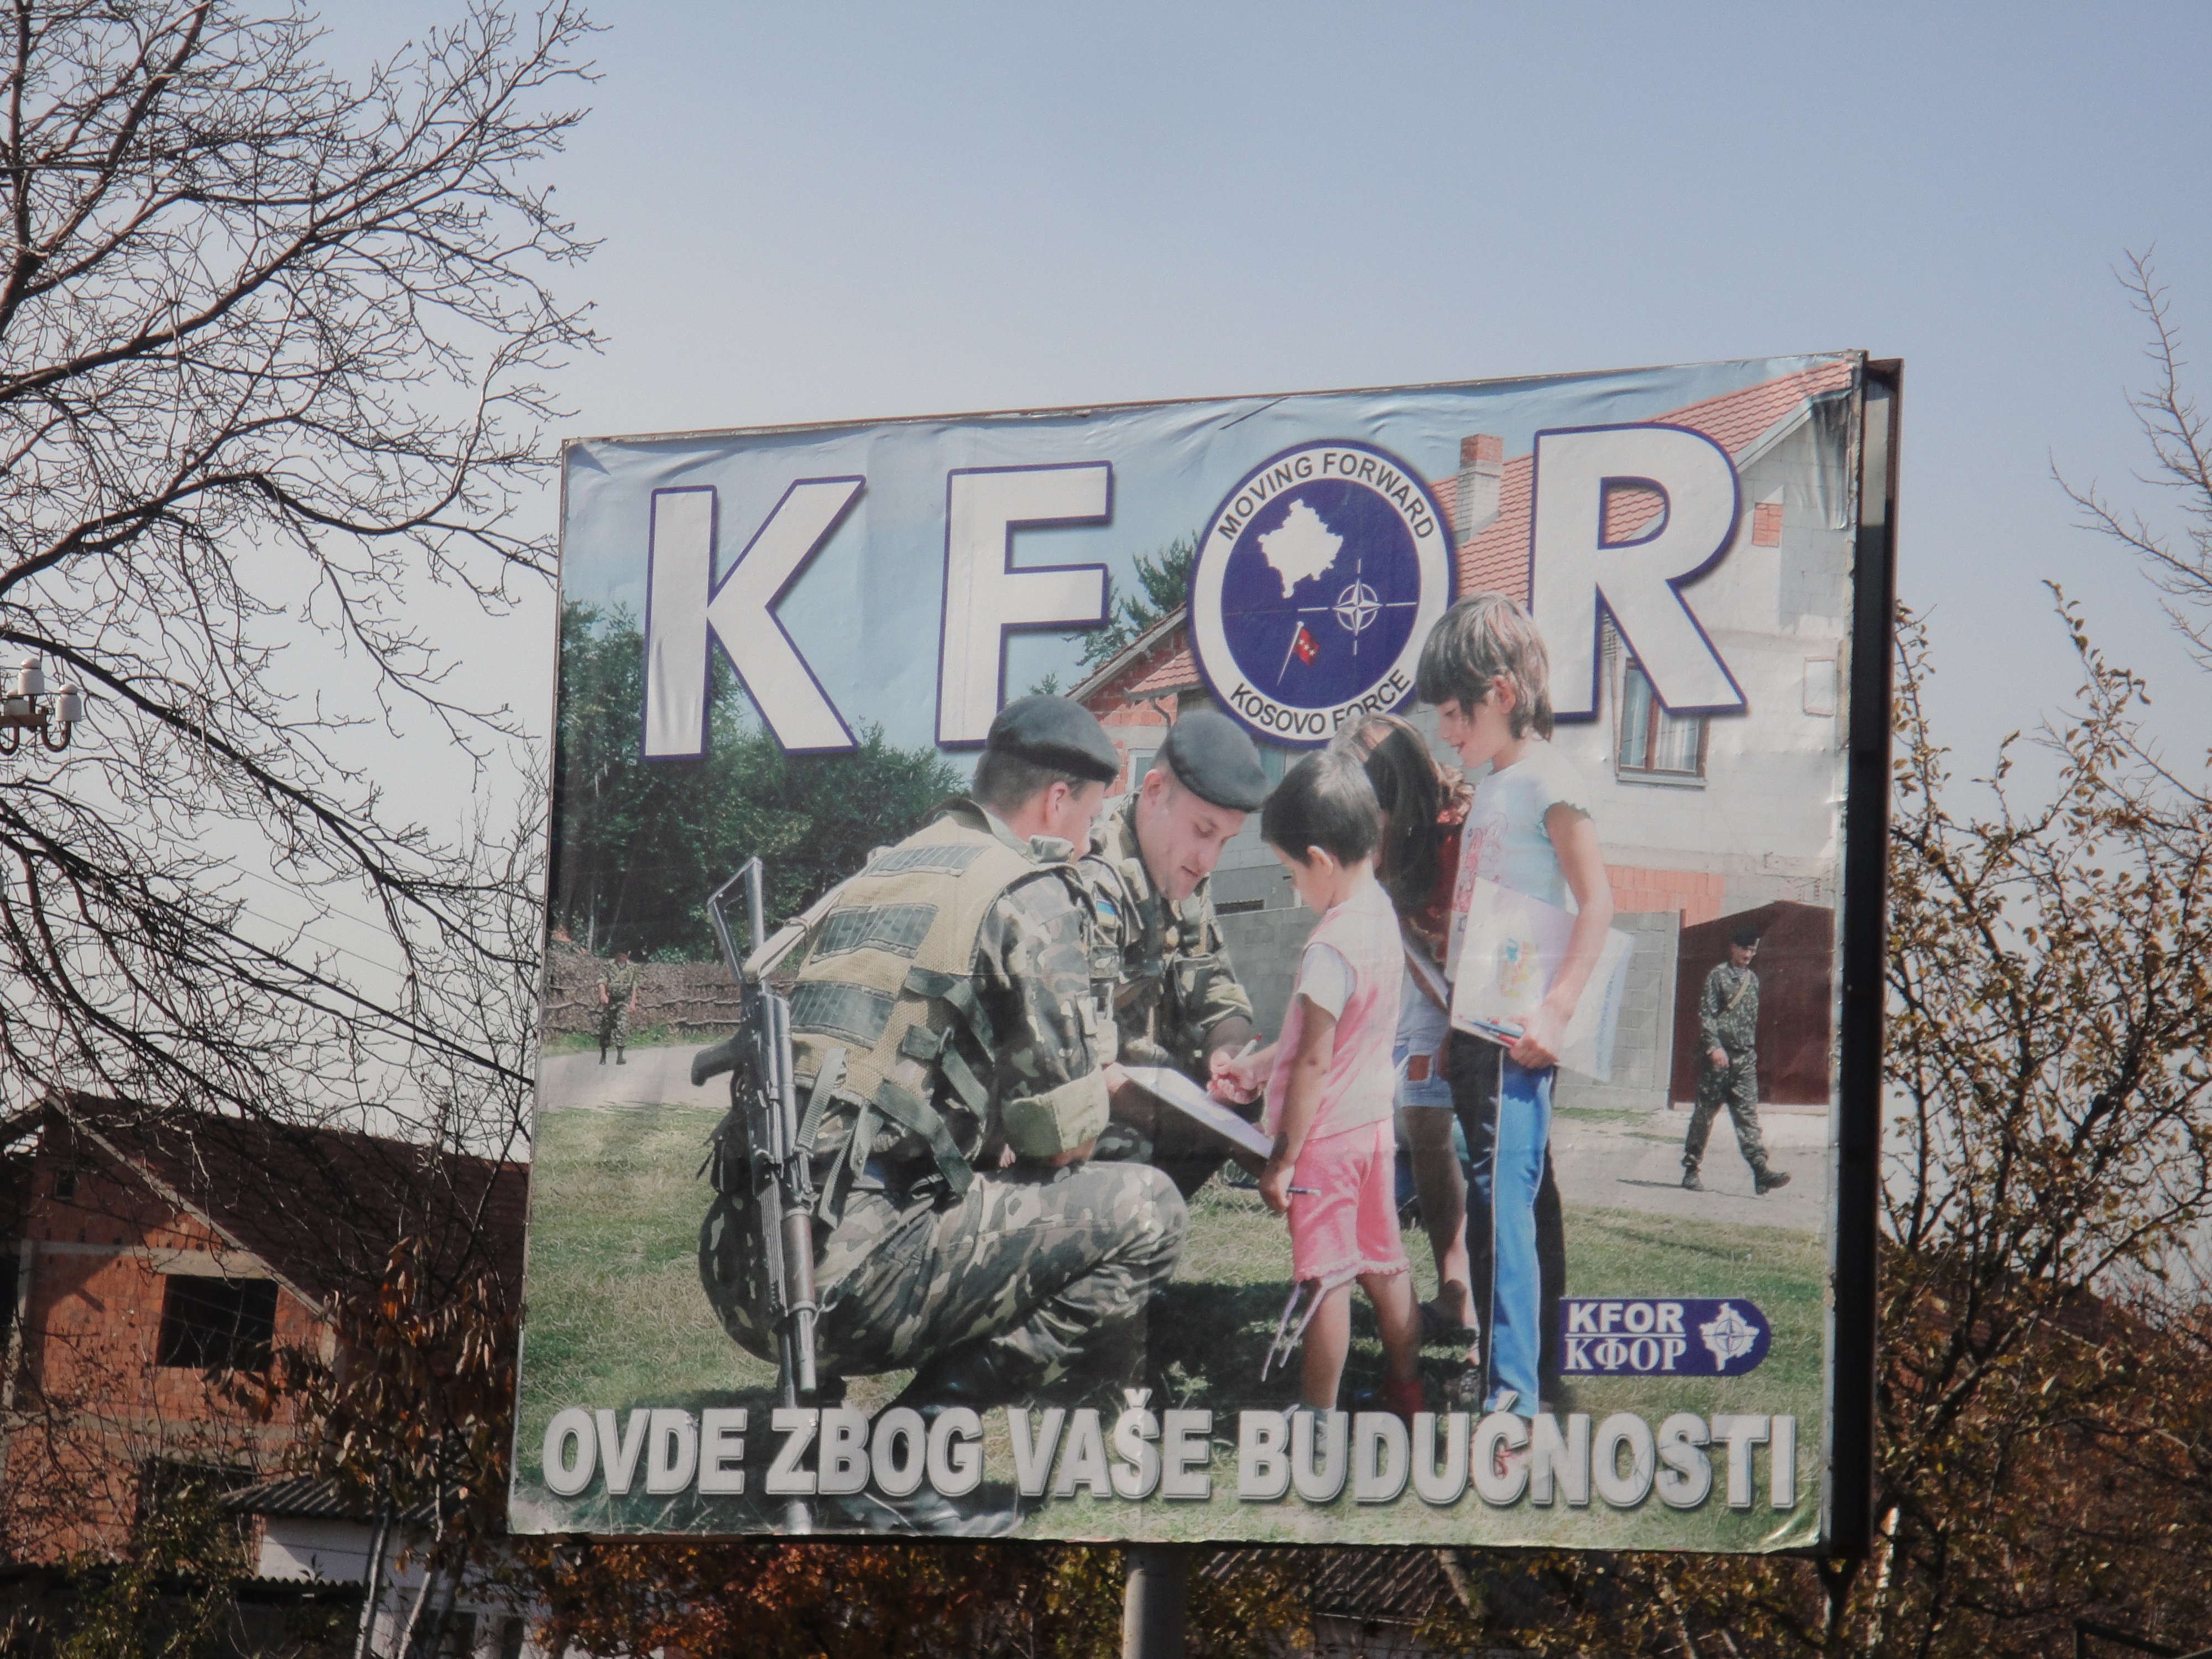 Београд: обезбеђење будућности Србима у “Републици Косово”